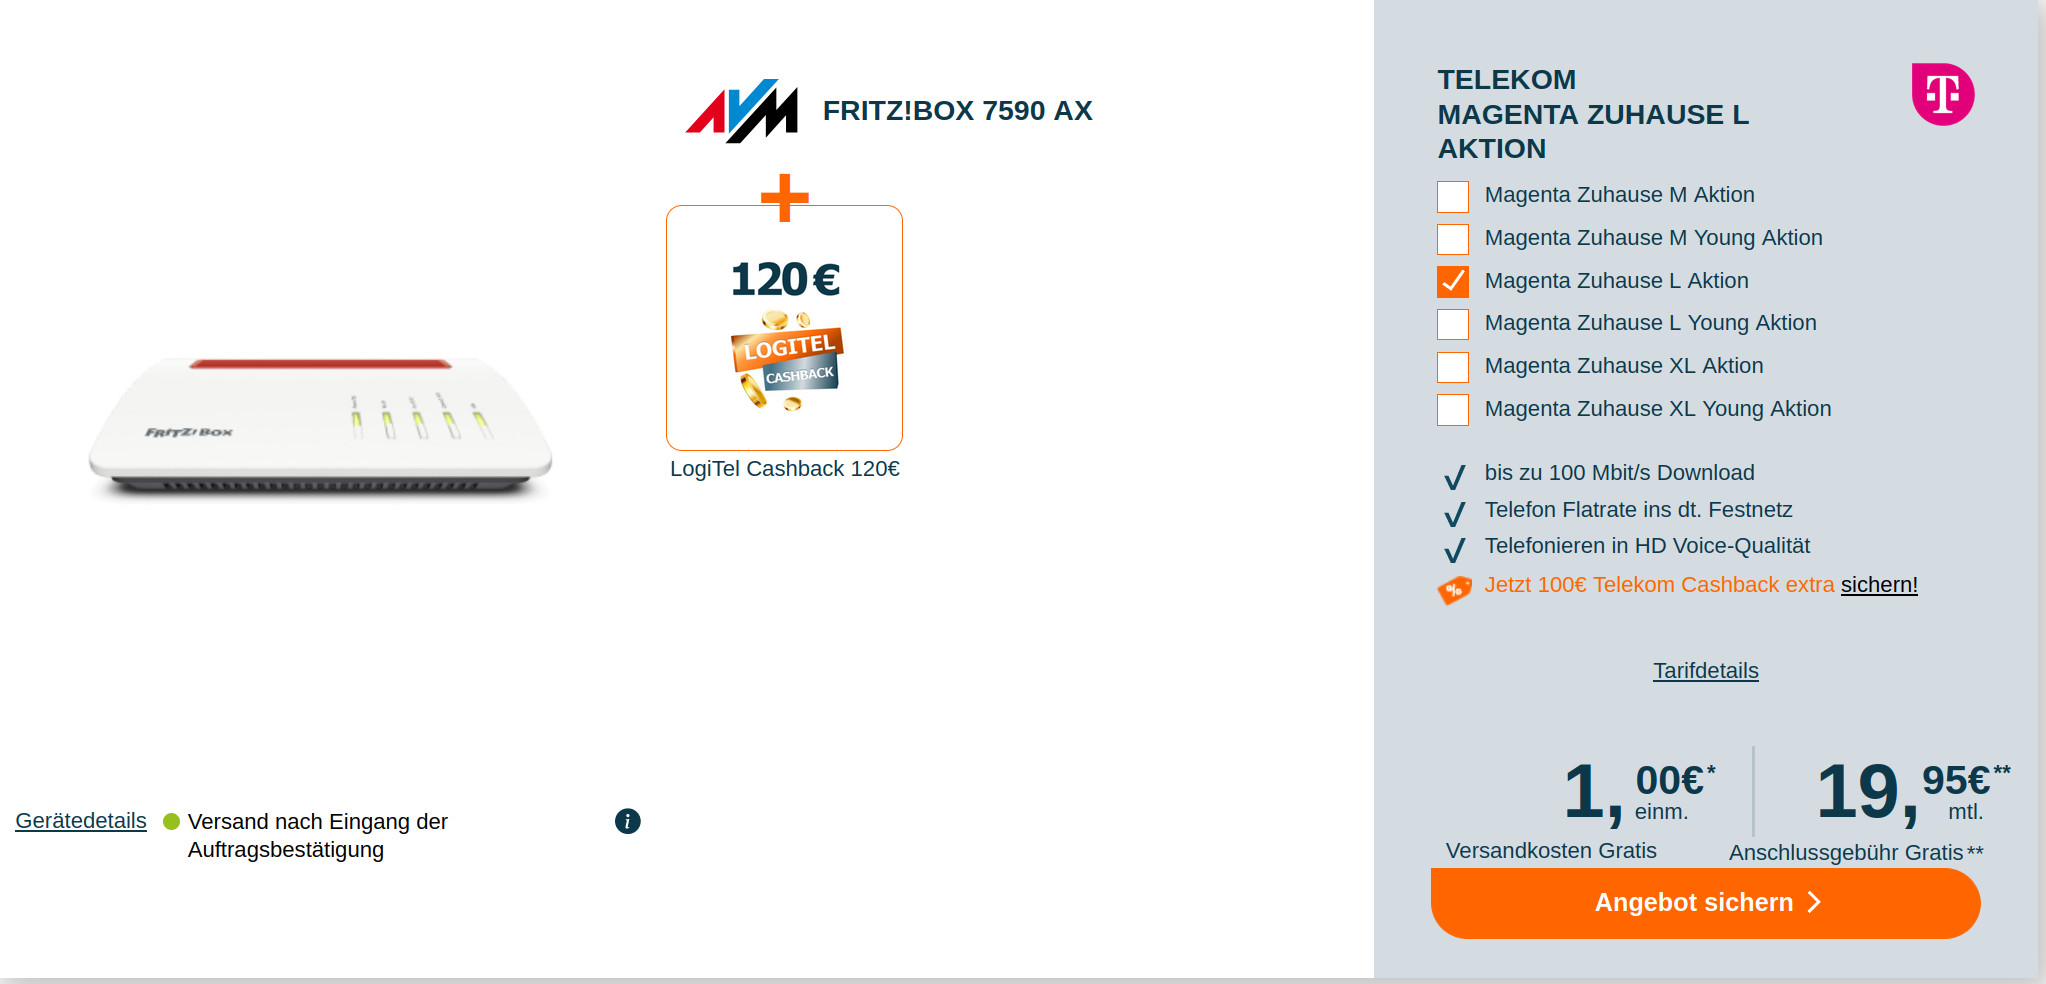 Spartipp Telekom Magenta Zuhause: 120 Euro Cashback plus Fritzbox 7590 AX mit Magenta Tarif fr mtl. 19,95 Euro